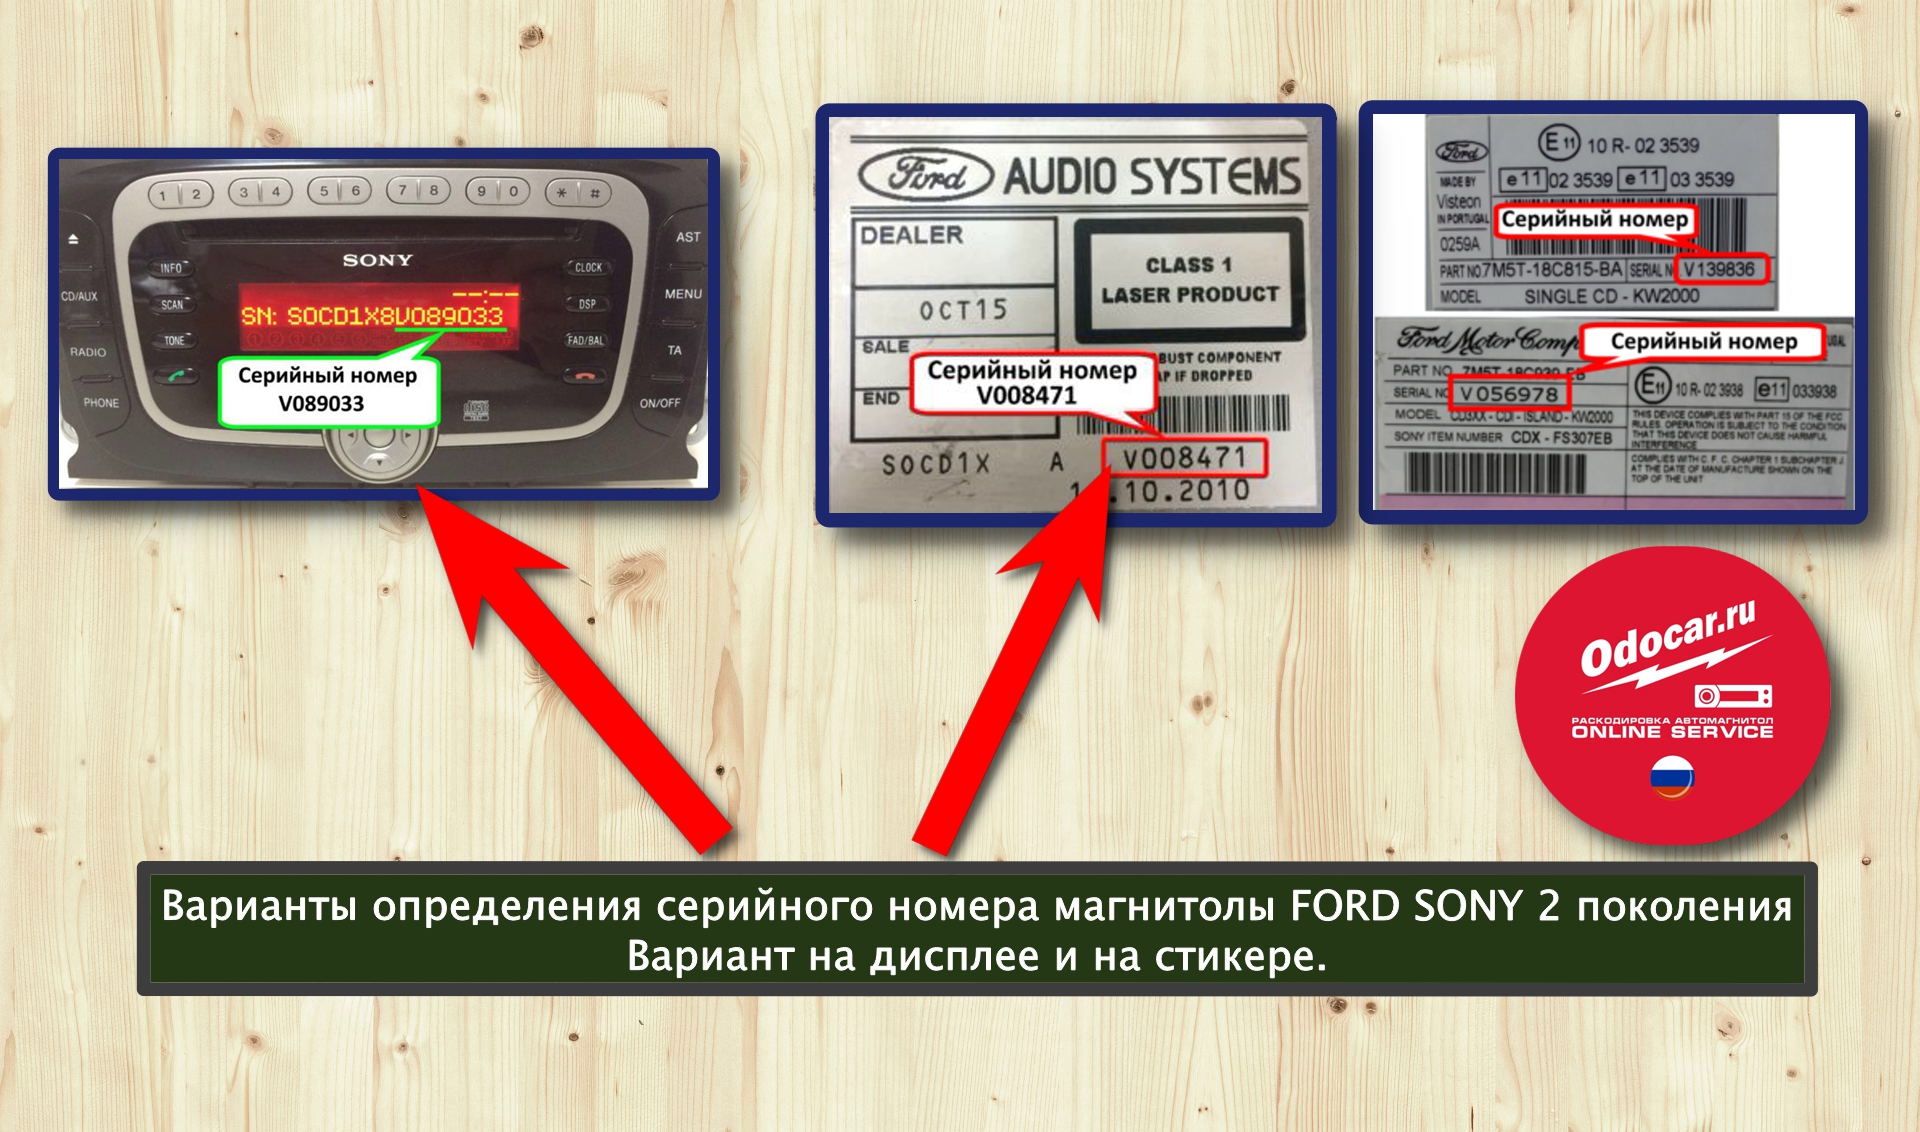 Разблокировать радио. Серийный номер магнитолы Sony Ford. Код магнитолы по серийному номеру. Код для автомагнитолы Sony.